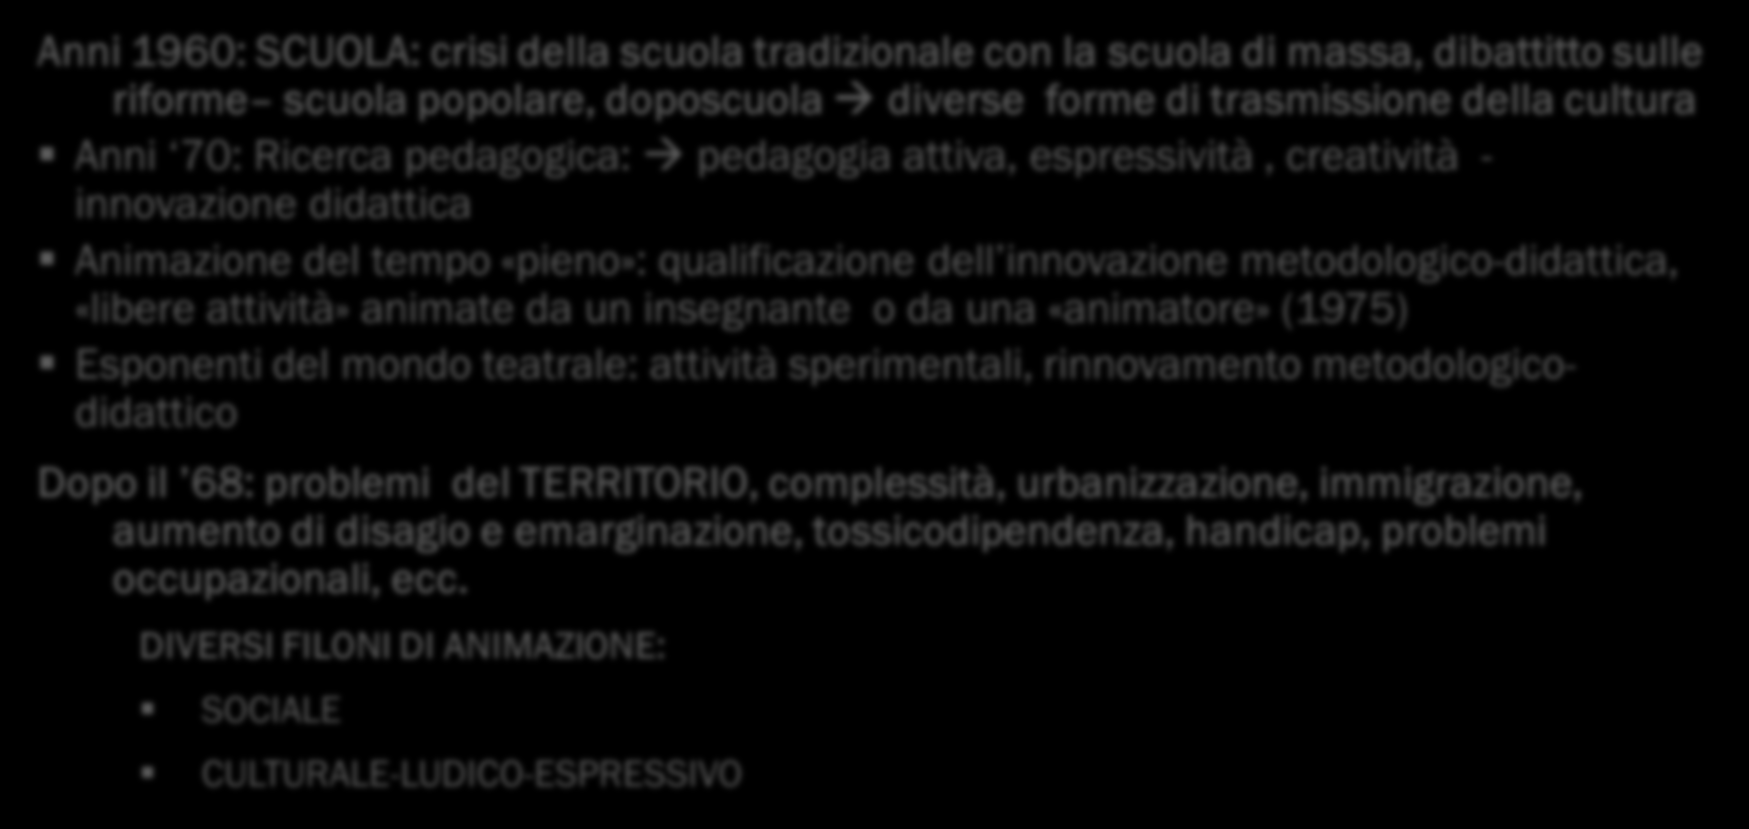 NASCITA DELL ANIMAZIONE IN ITALIA Anni 1960: SCUOLA: crisi della scuola tradizionale con la scuola di massa, dibattitto sulle riforme scuola popolare, doposcuola diverse forme di trasmissione della